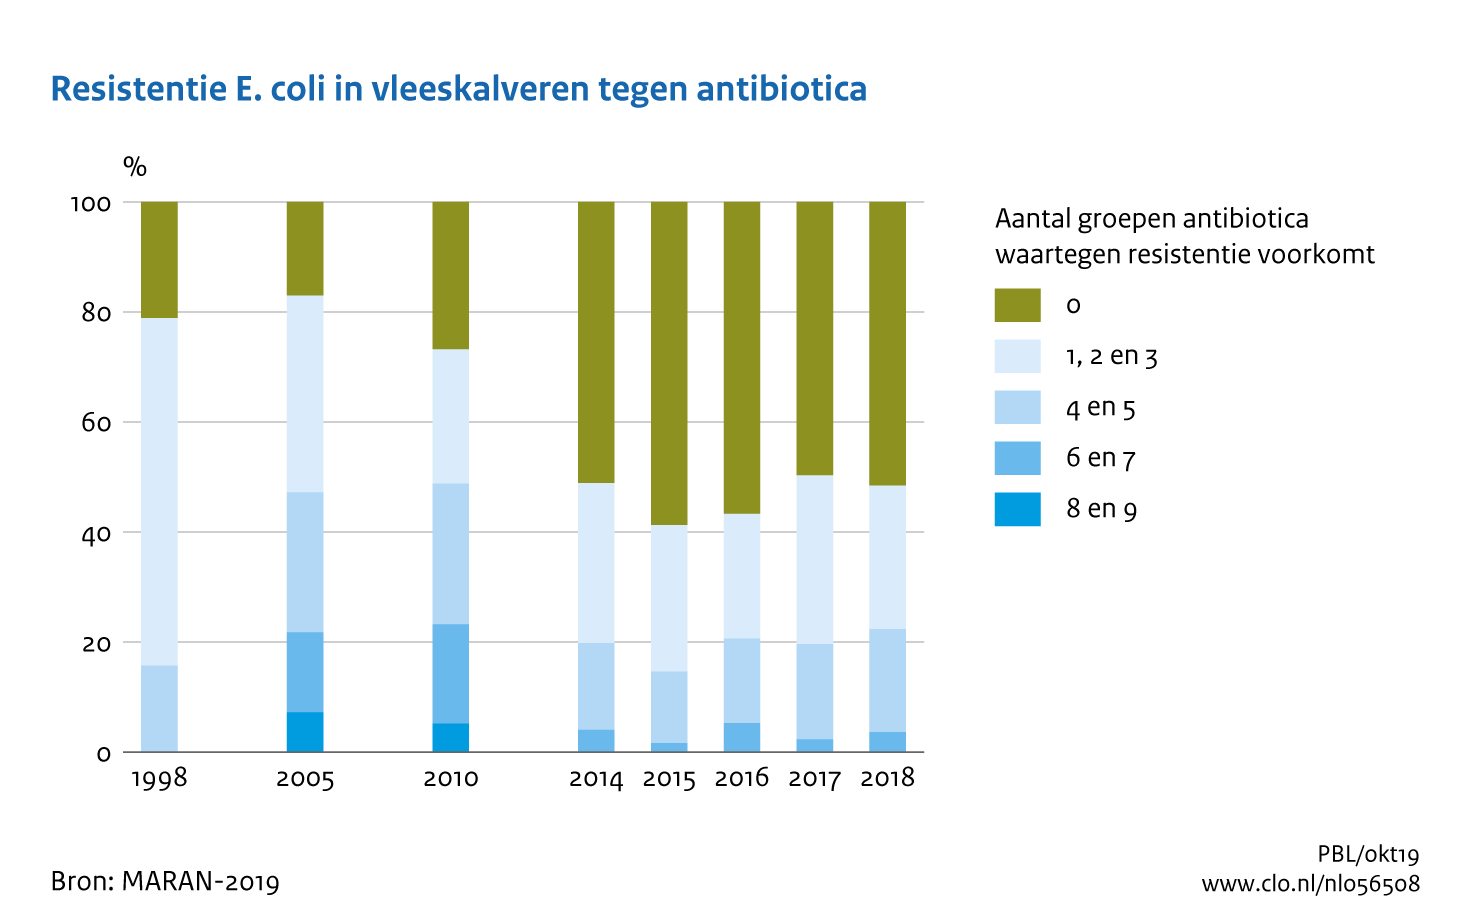 Figuur Resistentie E.coli in vleeskalveren tegen antibiotica. Meervoudige resistentie tegen antibiotica neemt af. . In de rest van de tekst wordt deze figuur uitgebreider uitgelegd.